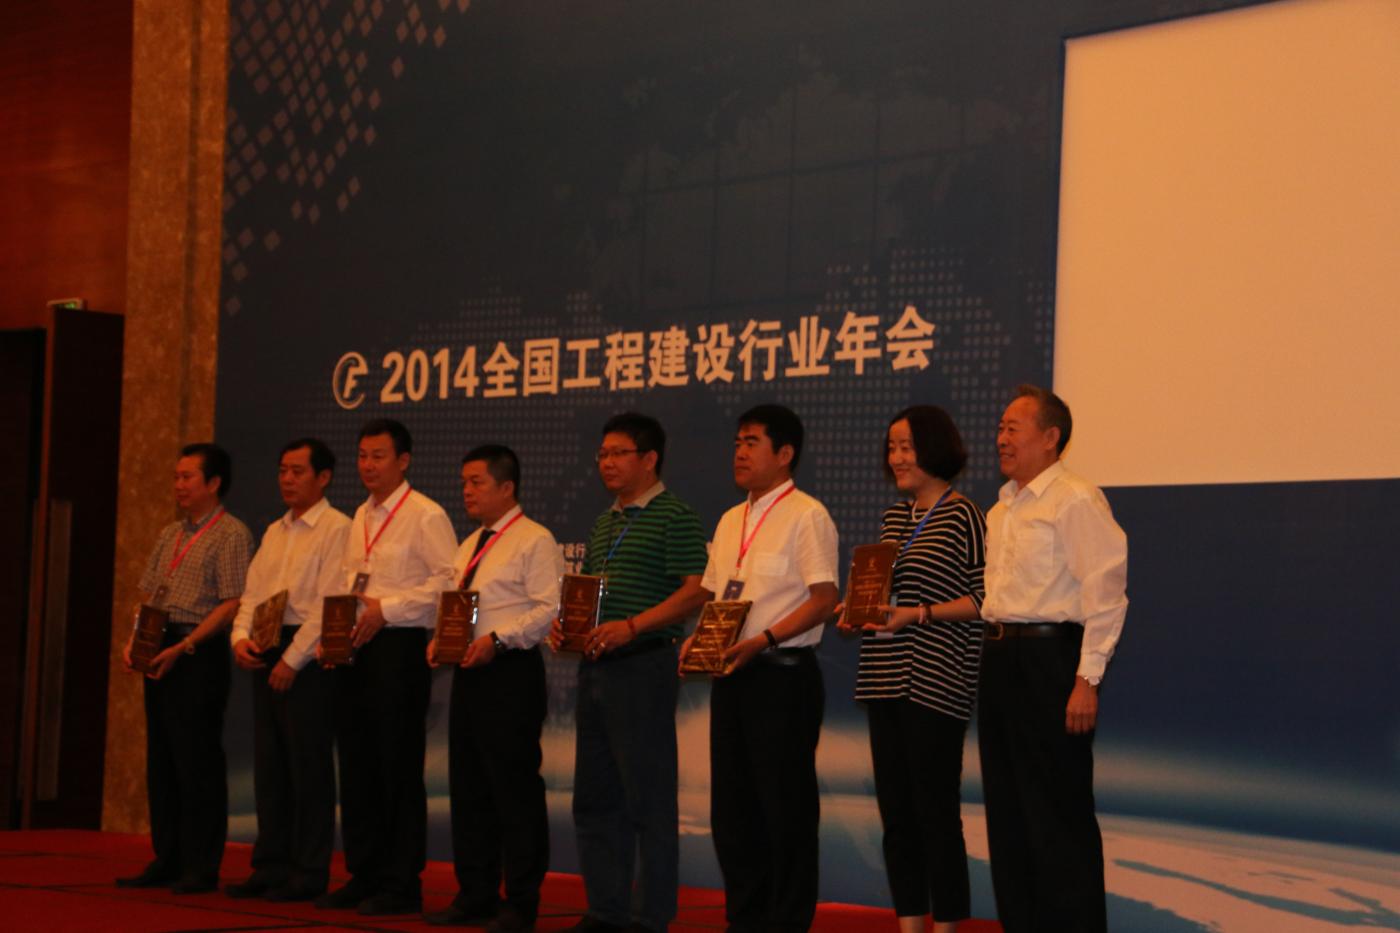 2014年公司获得中国建设行业协会授予的“优胜者杯“全国建设工程监理50强企业 (1400x933).JPG